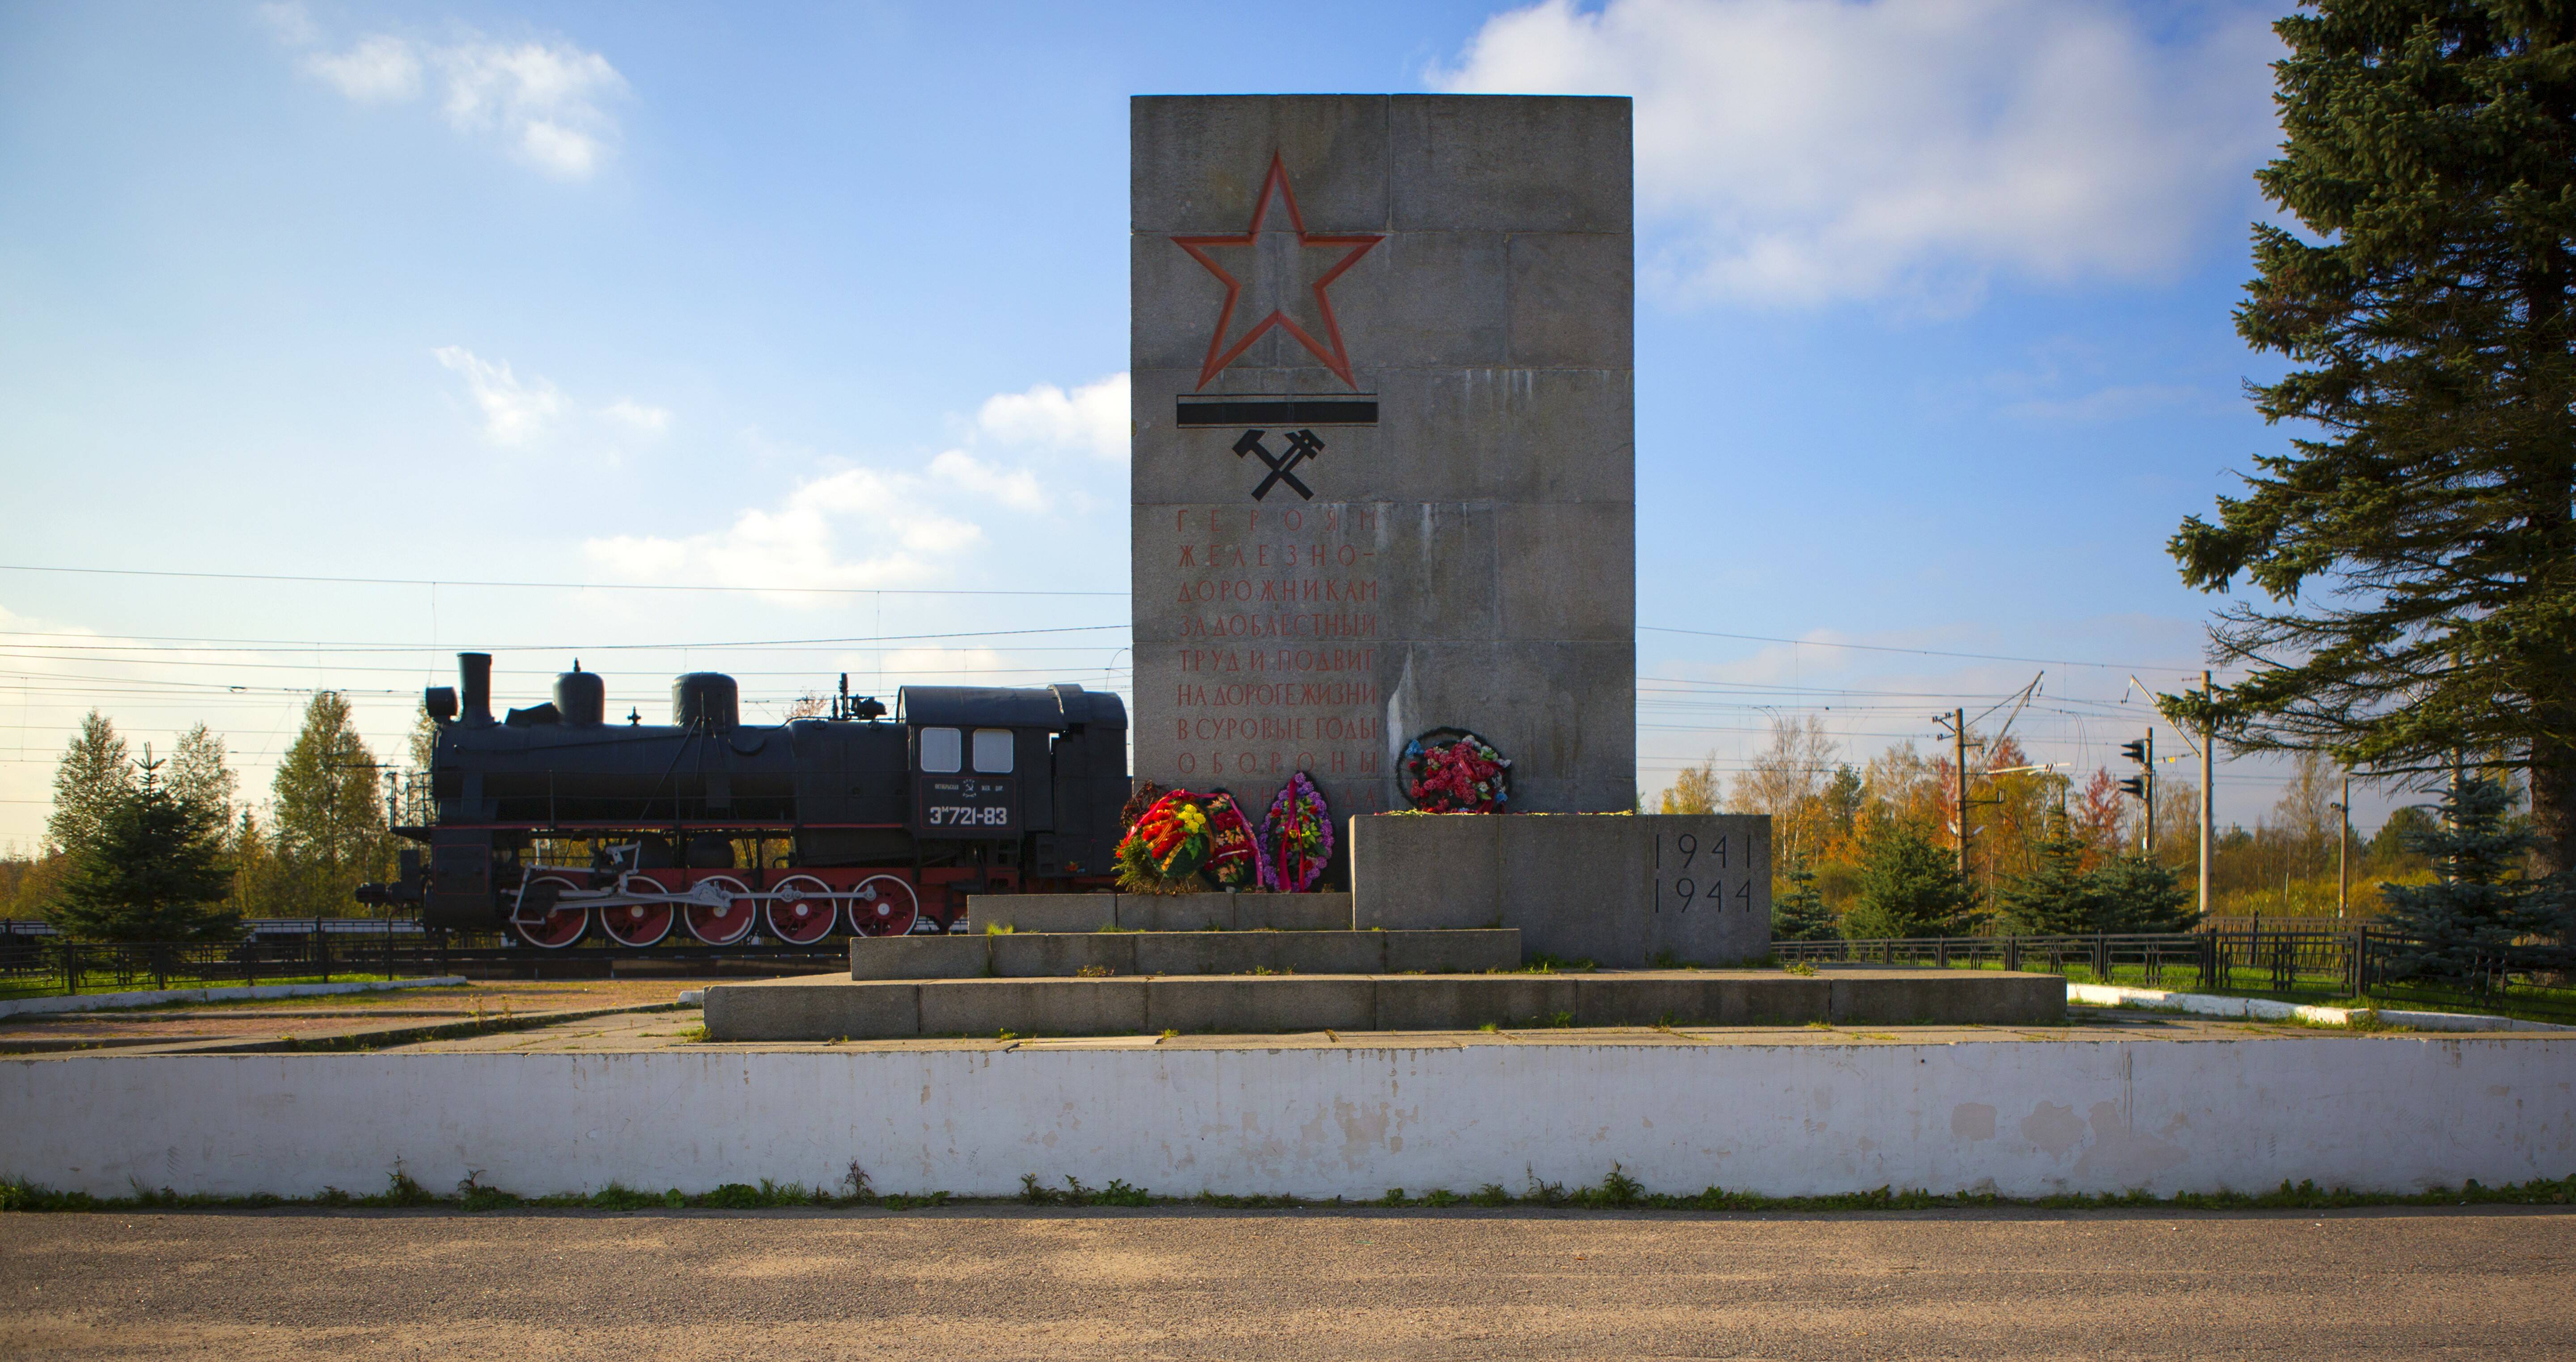 Мемориал «Стальной путь», посвящённый Дороге Победы. Установлен на станции Петрокрепость (фото: Olga1969 CC BY-SA 4.0)